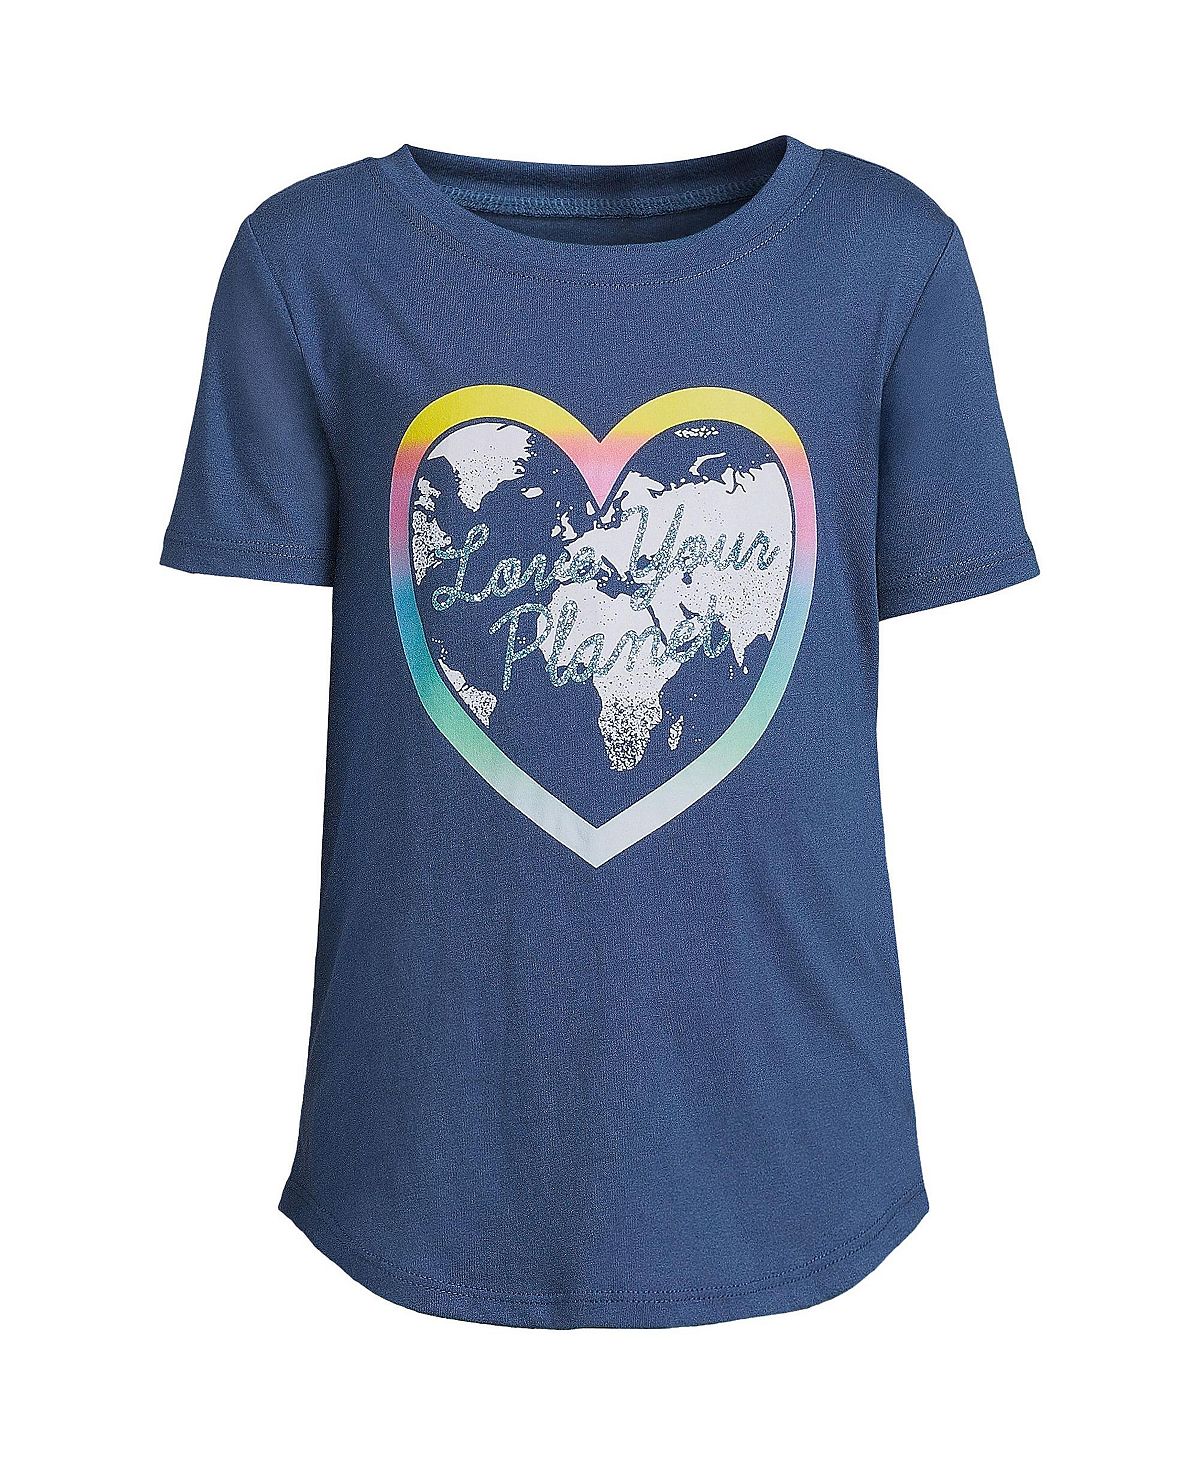 Детская футболка с короткими рукавами и рисунком для девочек с изогнутым краем Lands' End look after your planet